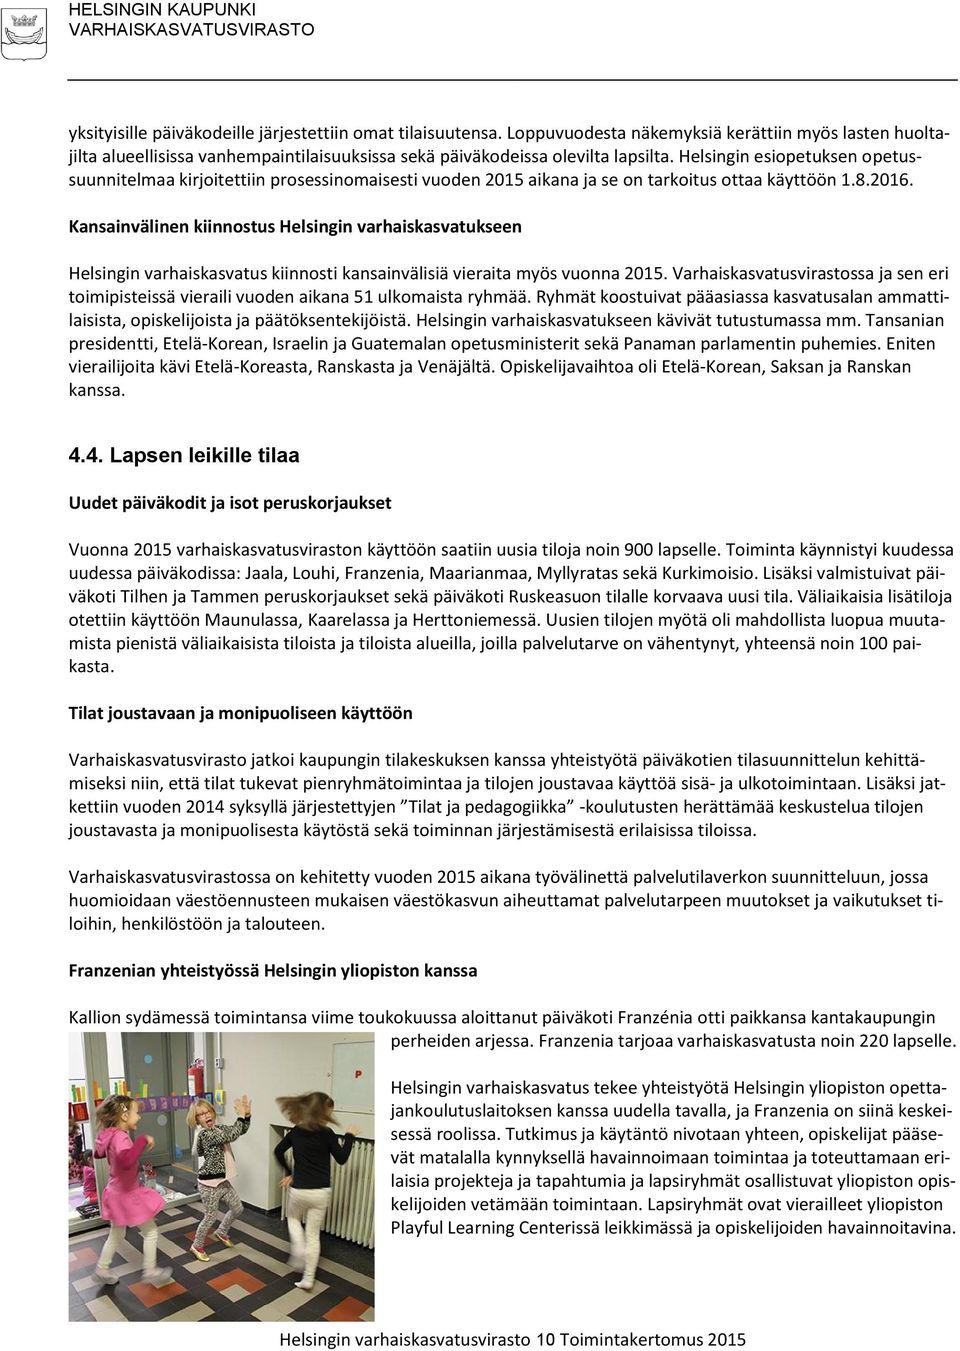 Helsingin esiopetuksen opetussuunnitelmaa kirjoitettiin prosessinomaisesti vuoden 2015 aikana ja se on tarkoitus ottaa käyttöön 1.8.2016.